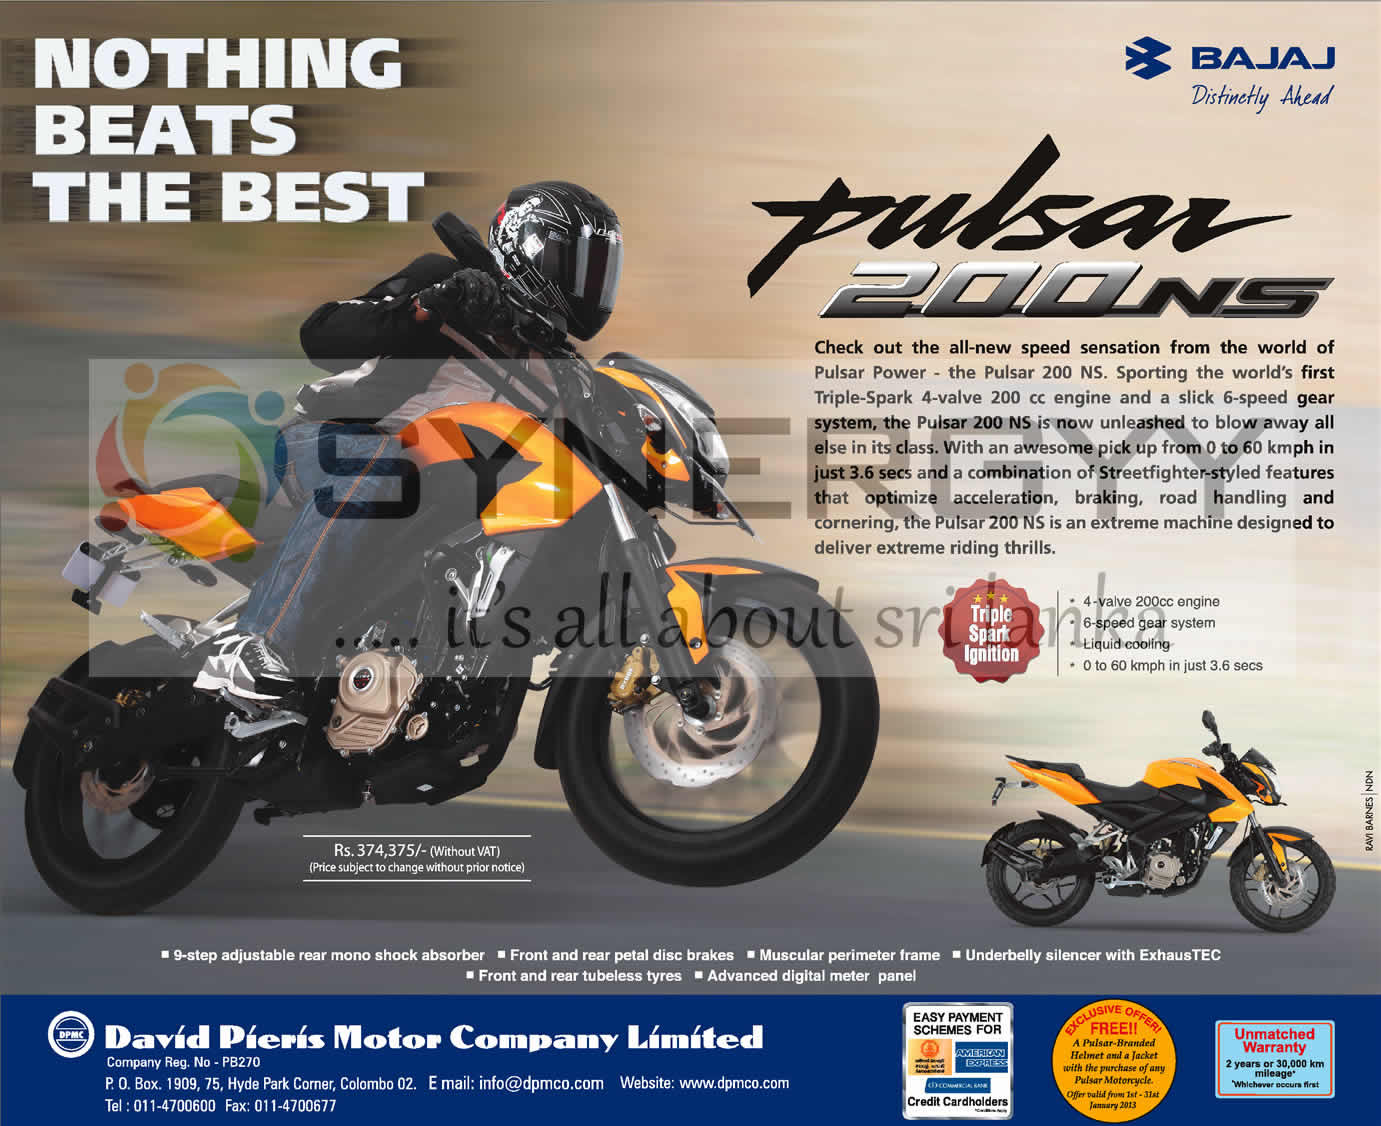 Bajaj Pulsar 200cc Ns Prices In Srilanka Rs 431 850 April